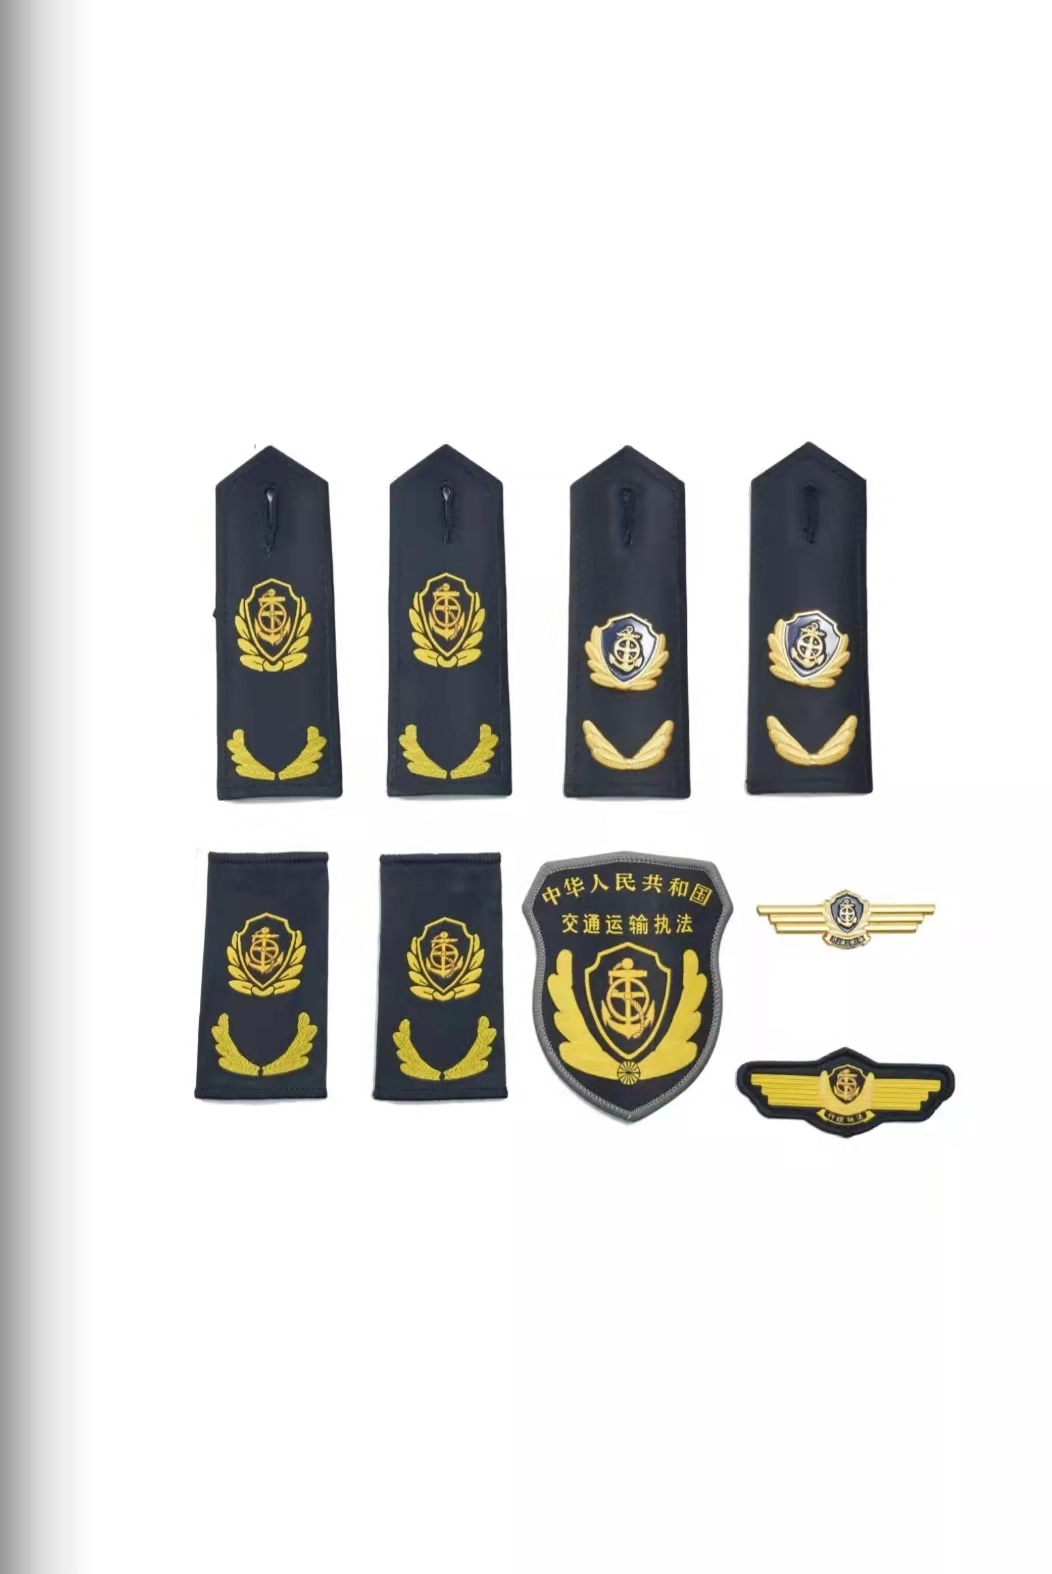 呼和浩特六部门统一交通运输执法服装标志